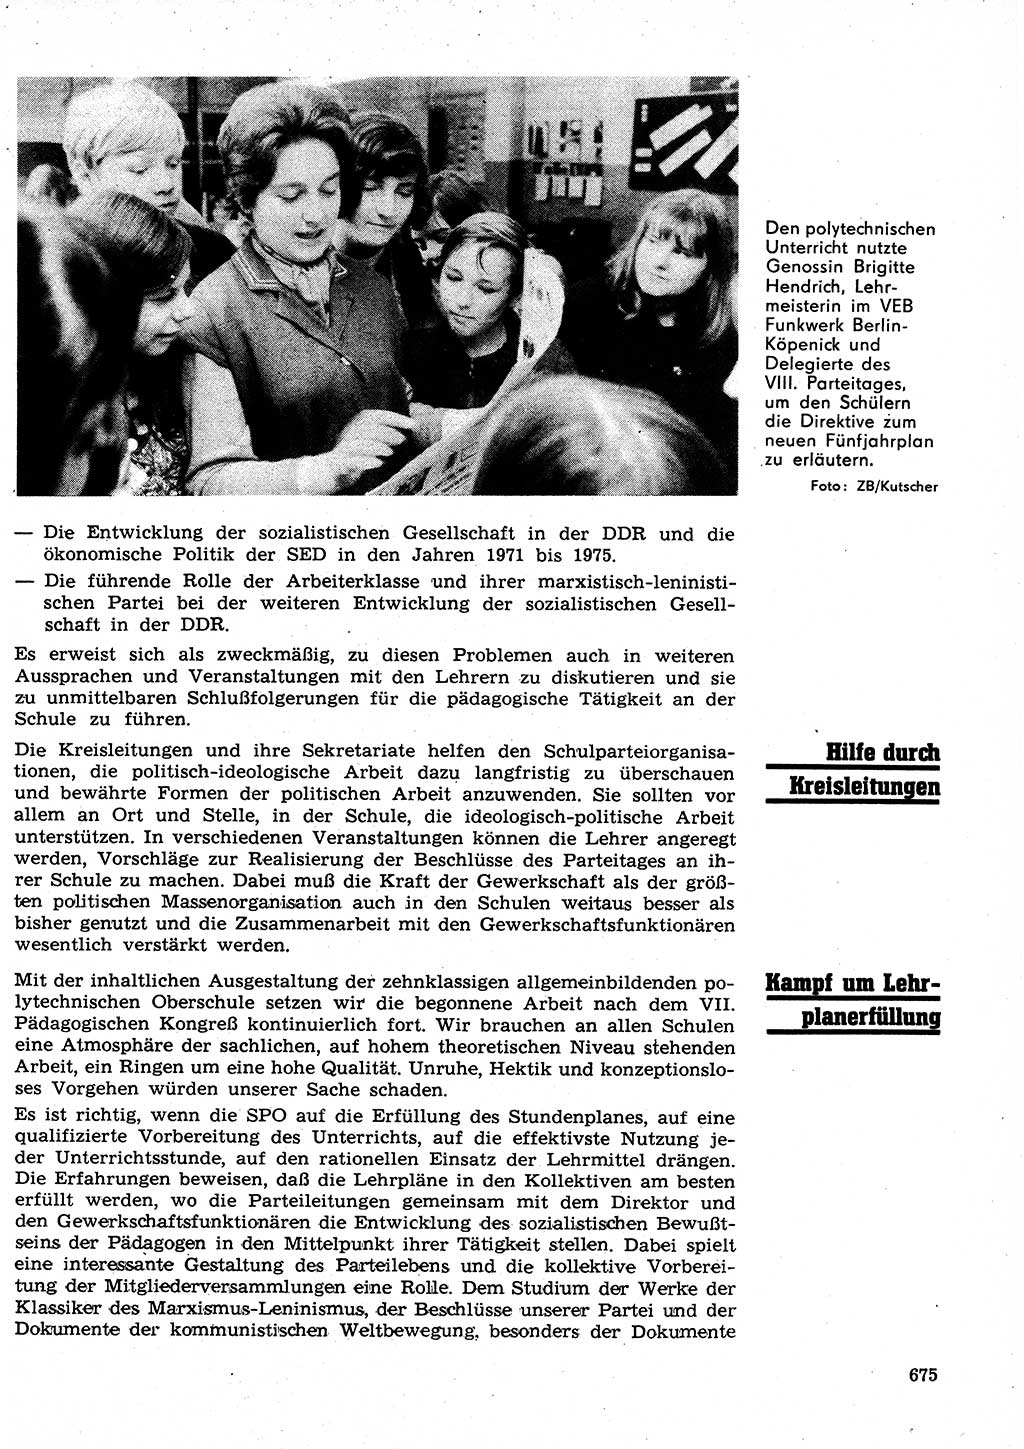 Neuer Weg (NW), Organ des Zentralkomitees (ZK) der SED (Sozialistische Einheitspartei Deutschlands) für Fragen des Parteilebens, 26. Jahrgang [Deutsche Demokratische Republik (DDR)] 1971, Seite 675 (NW ZK SED DDR 1971, S. 675)